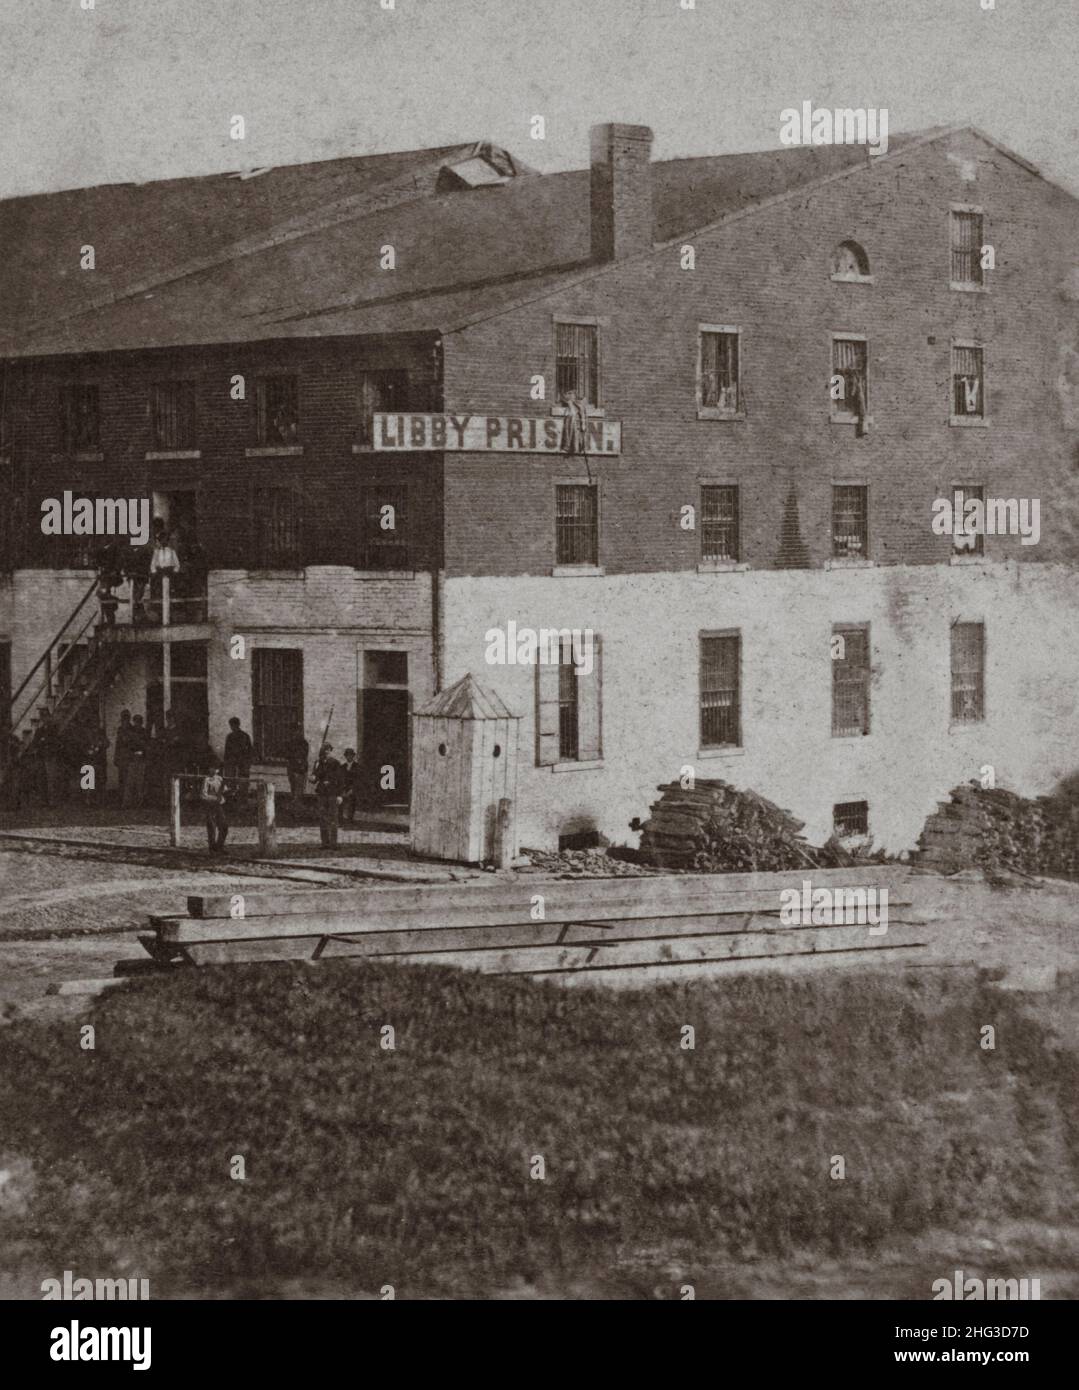 Foto vintage de las vistas de Richmond y sus alrededores, y paisajes de montaña de Virginia y West Va. Libby Prison. EE.UU. Entre 1860 y 1880 Foto de stock